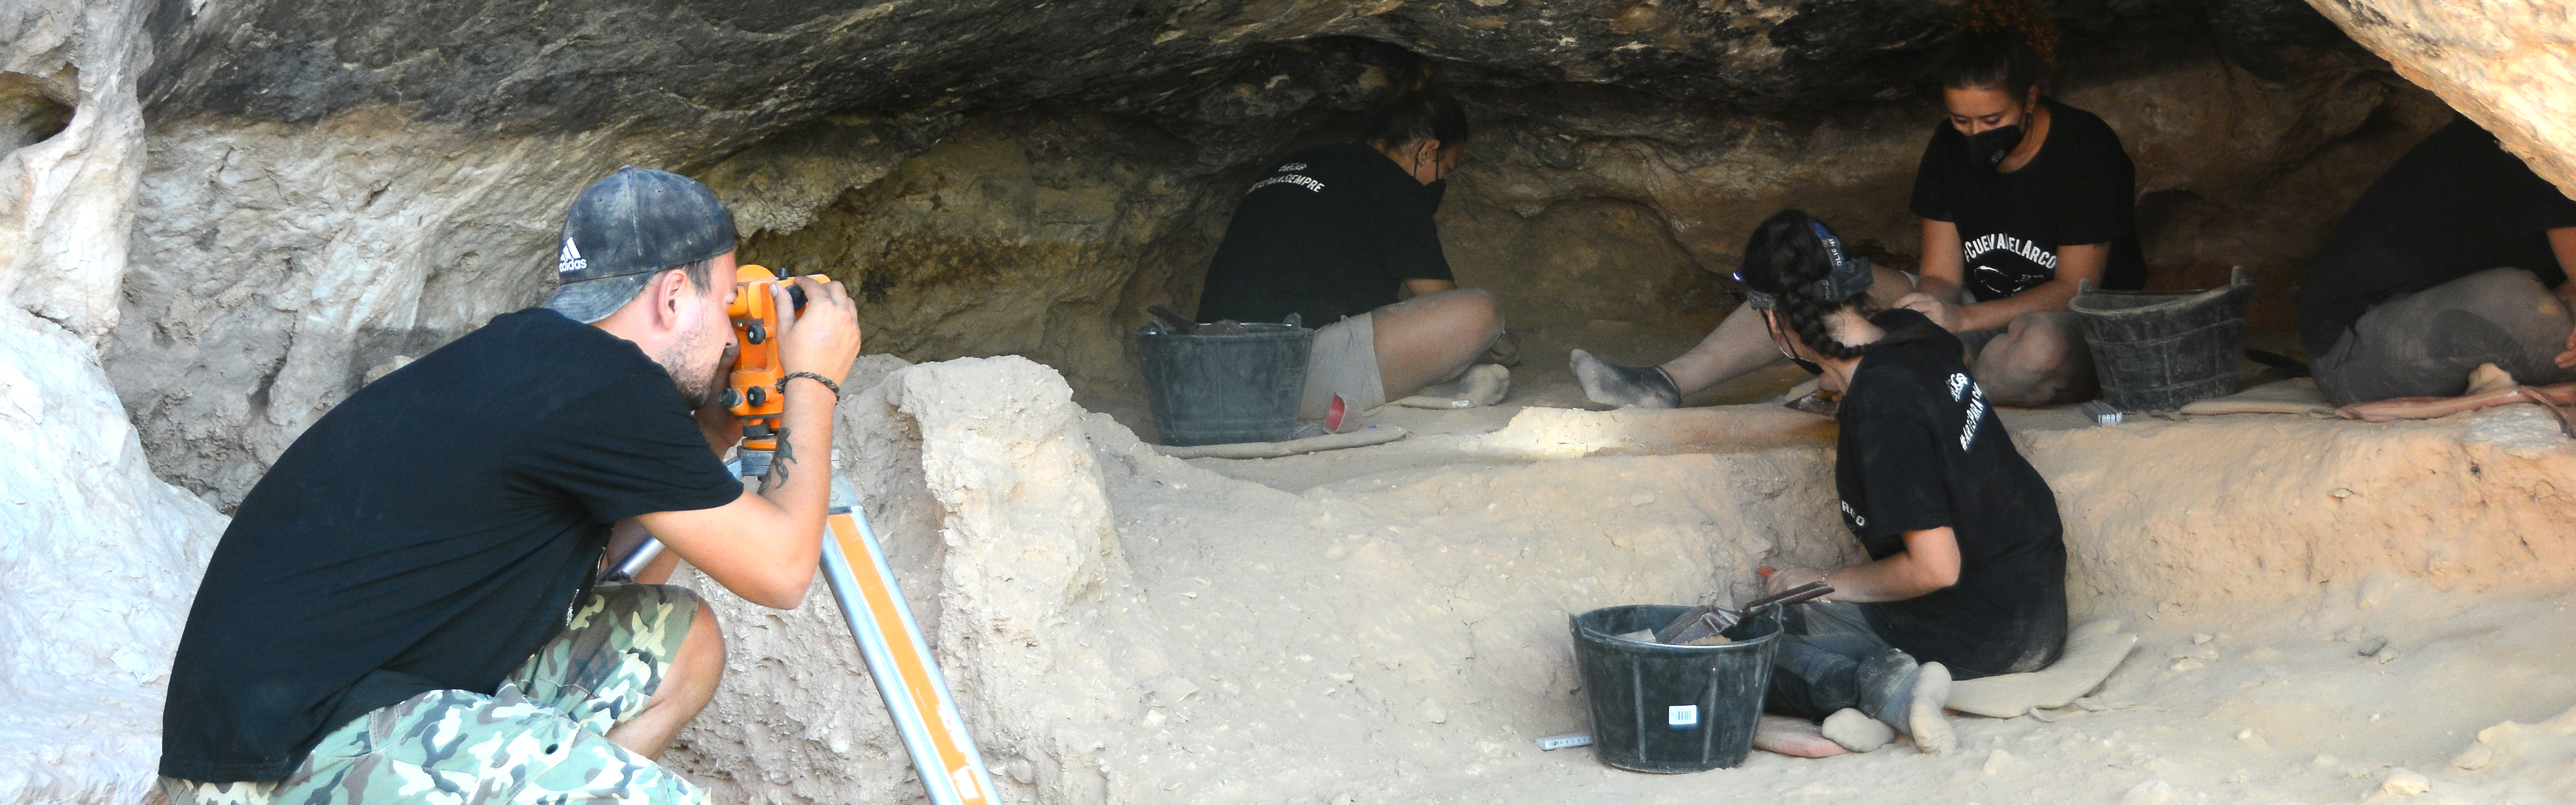 Las excavaciones de la UMU en la Cueva del Arco descubren restos de una carnicería de hace más de 20.000 años